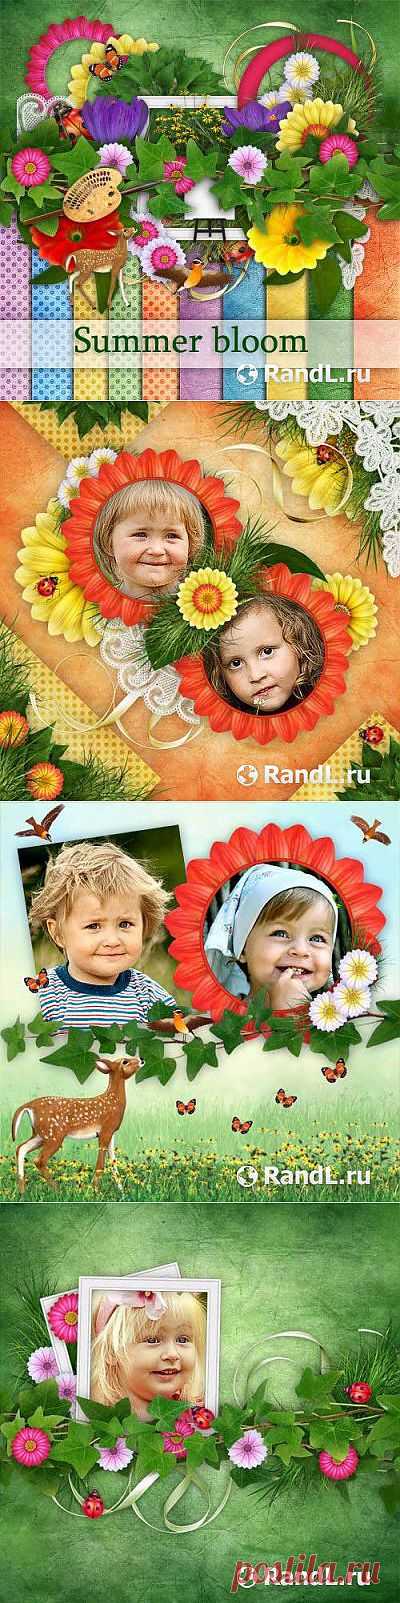 Прекрасный летний скрап-комплект - Цветущие летом » RandL.ru - Все о графике, photoshop и дизайне. Скачать бесплатно photoshop, фото, картинки, обои, рисунки, иконки, клипарты, шаблоны.